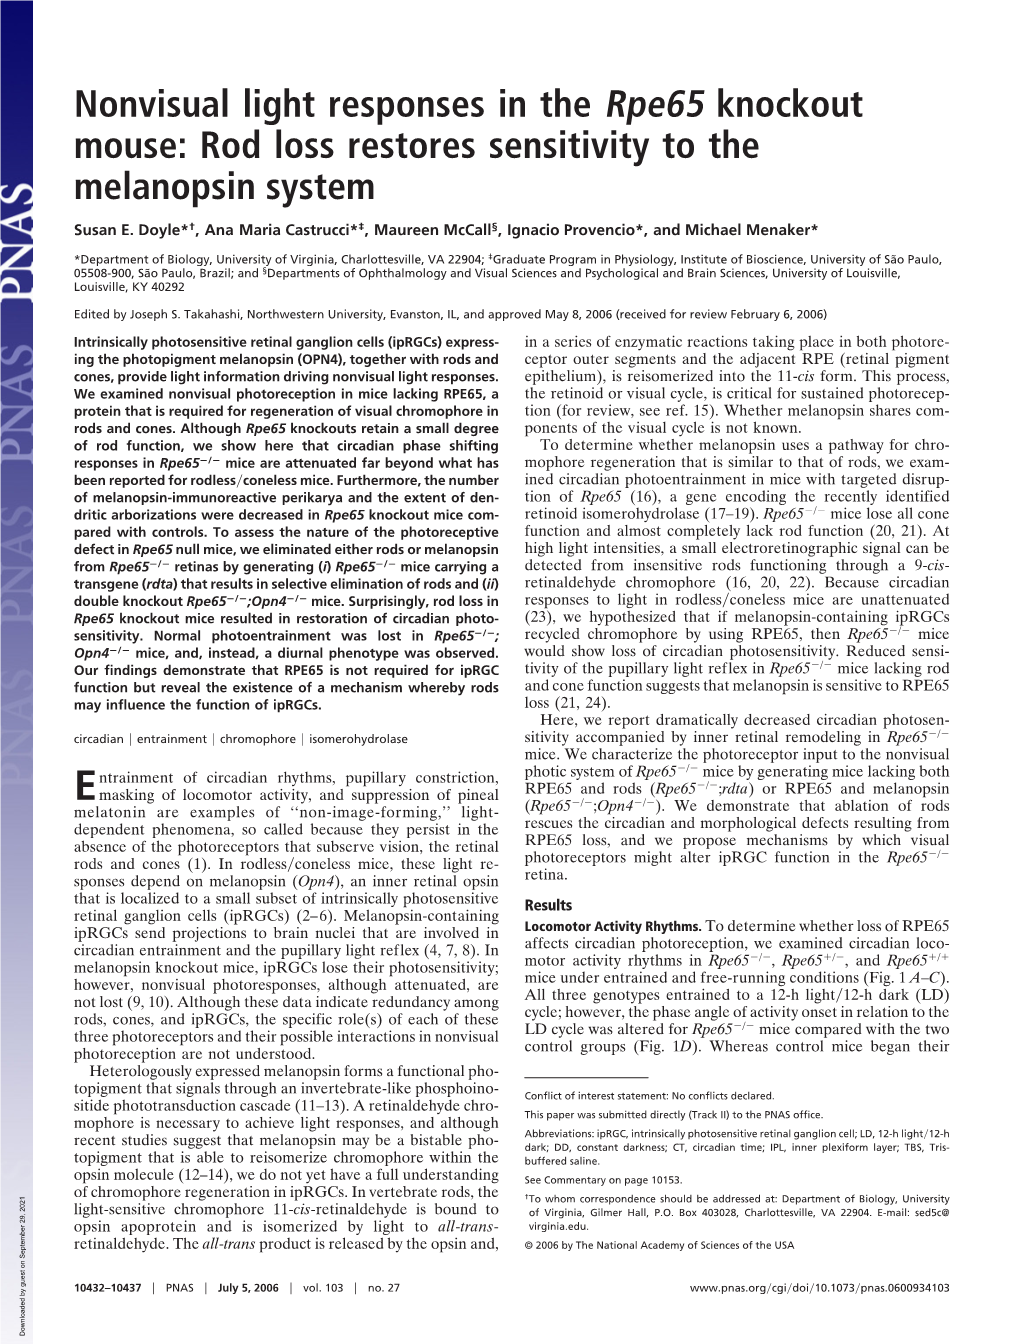 Rod Loss Restores Sensitivity to the Melanopsin System